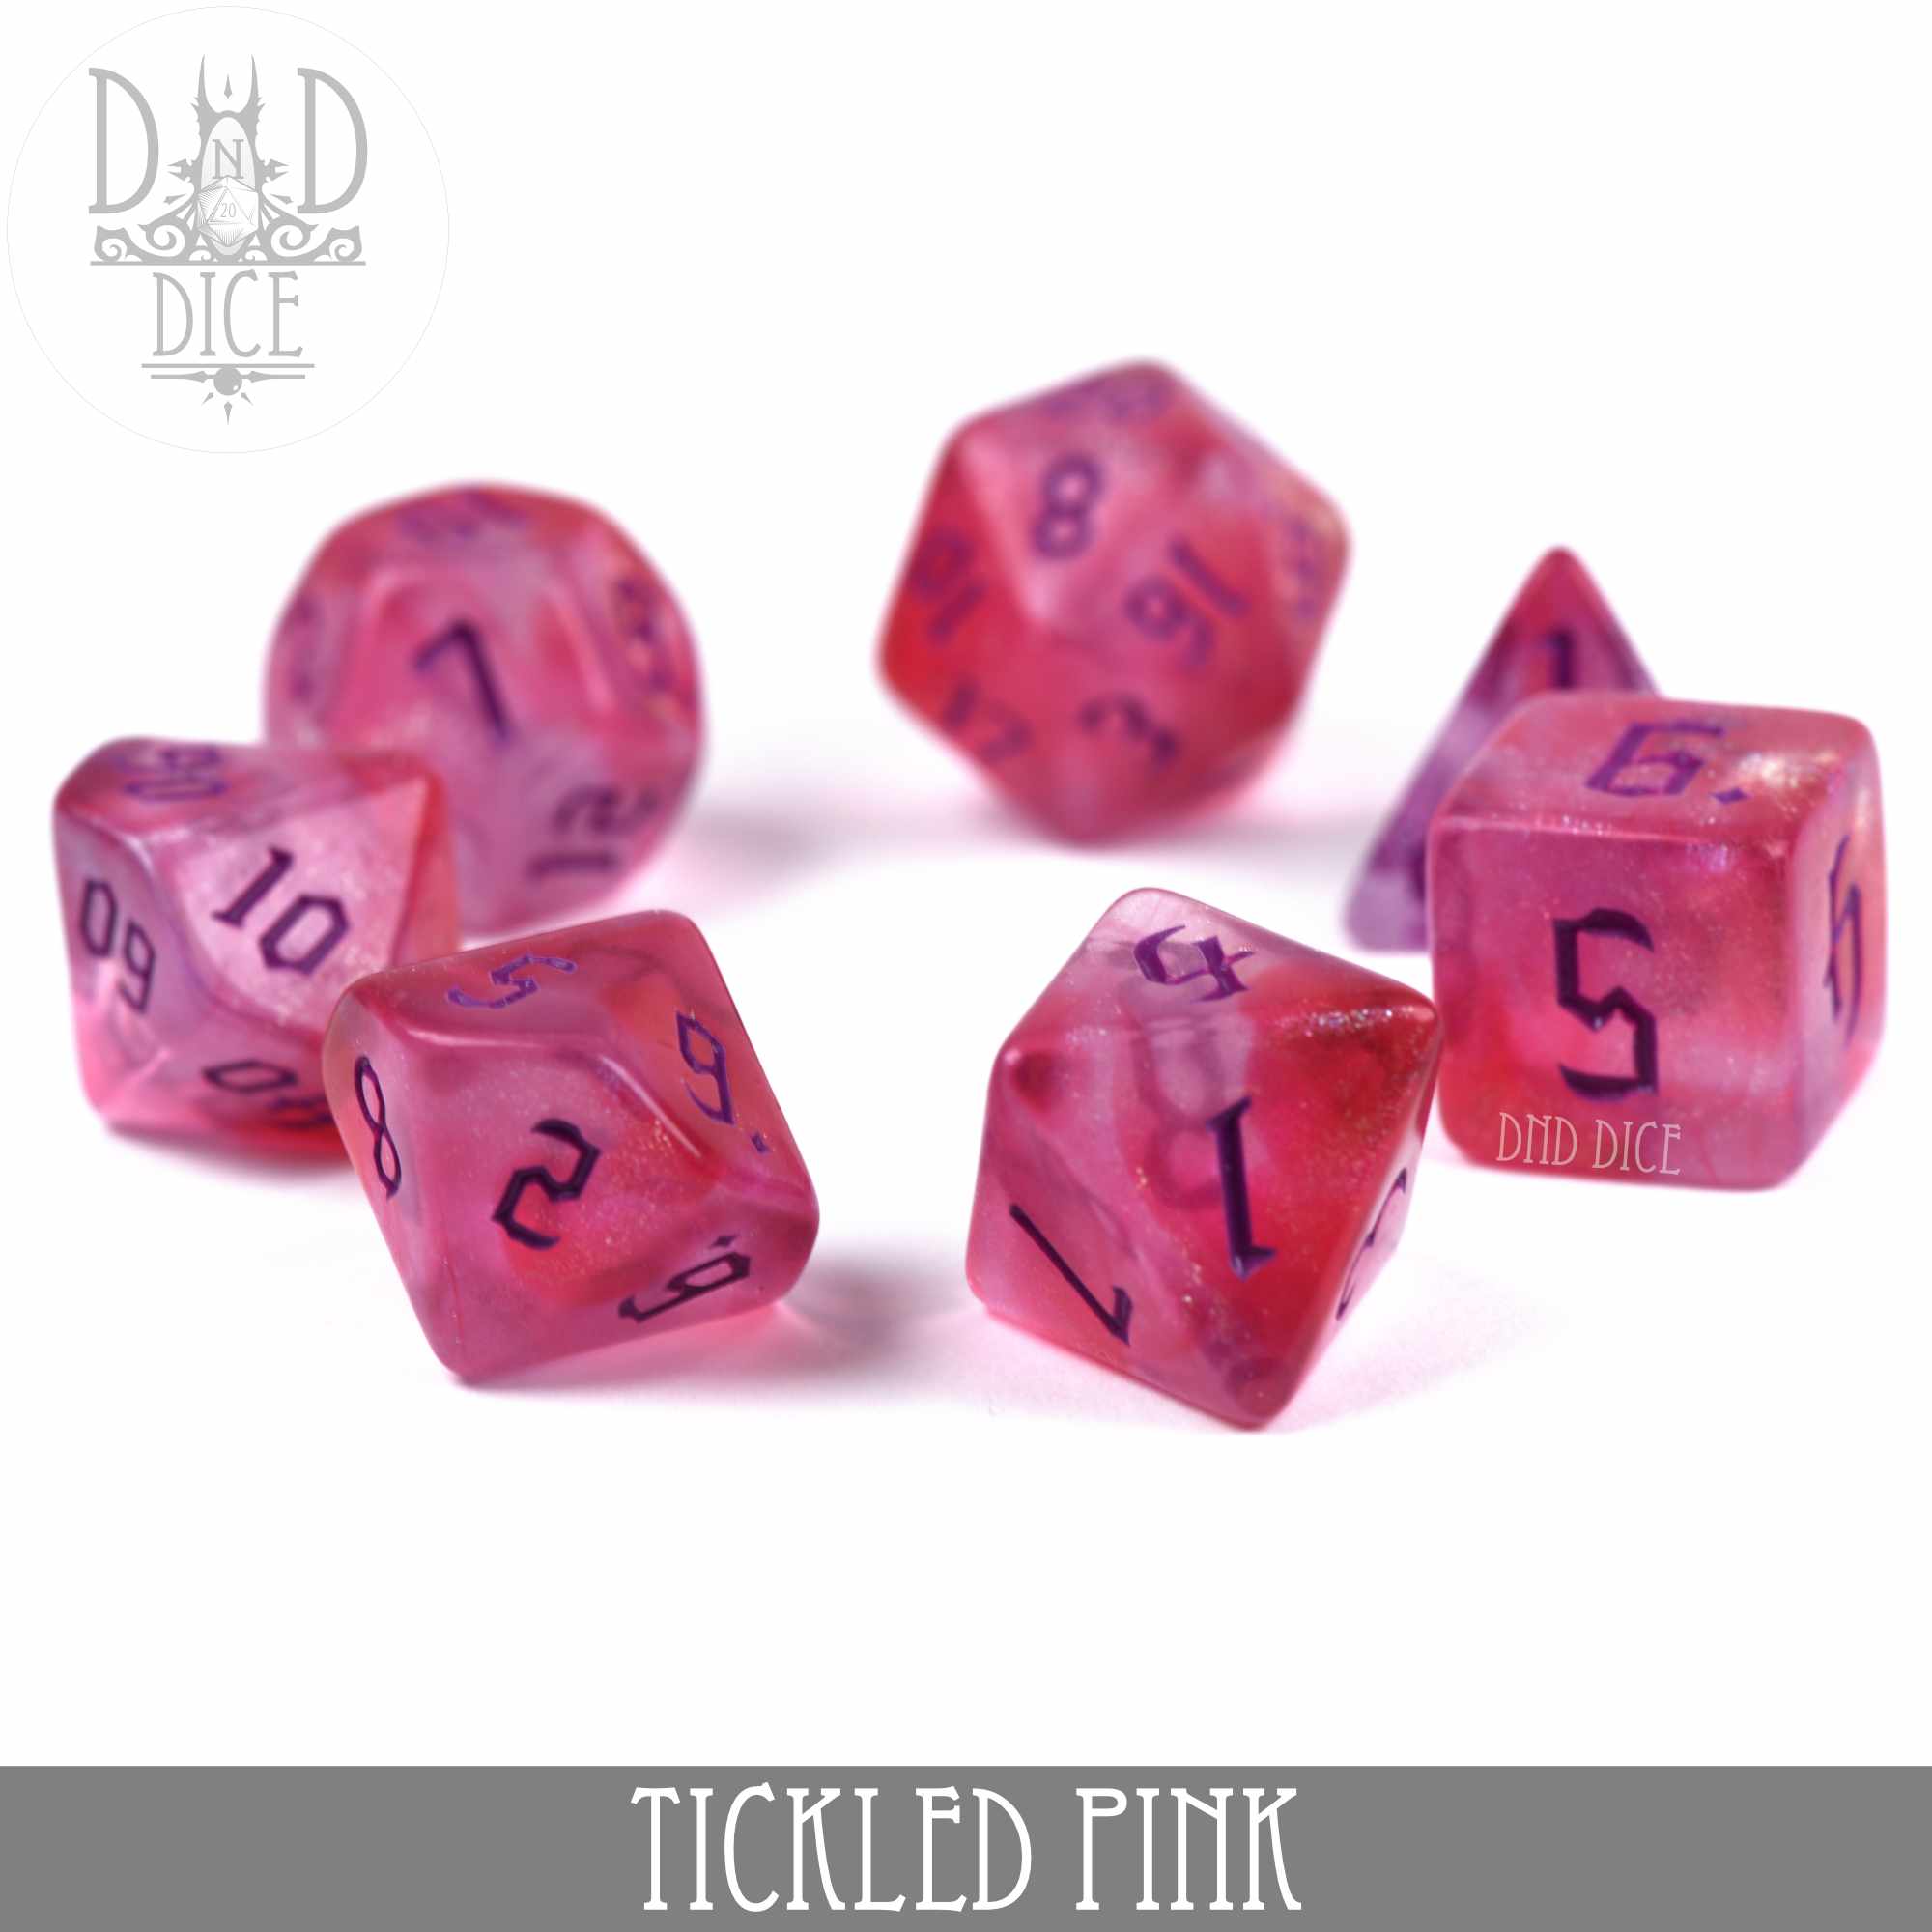 Tickled Pink Dice Set